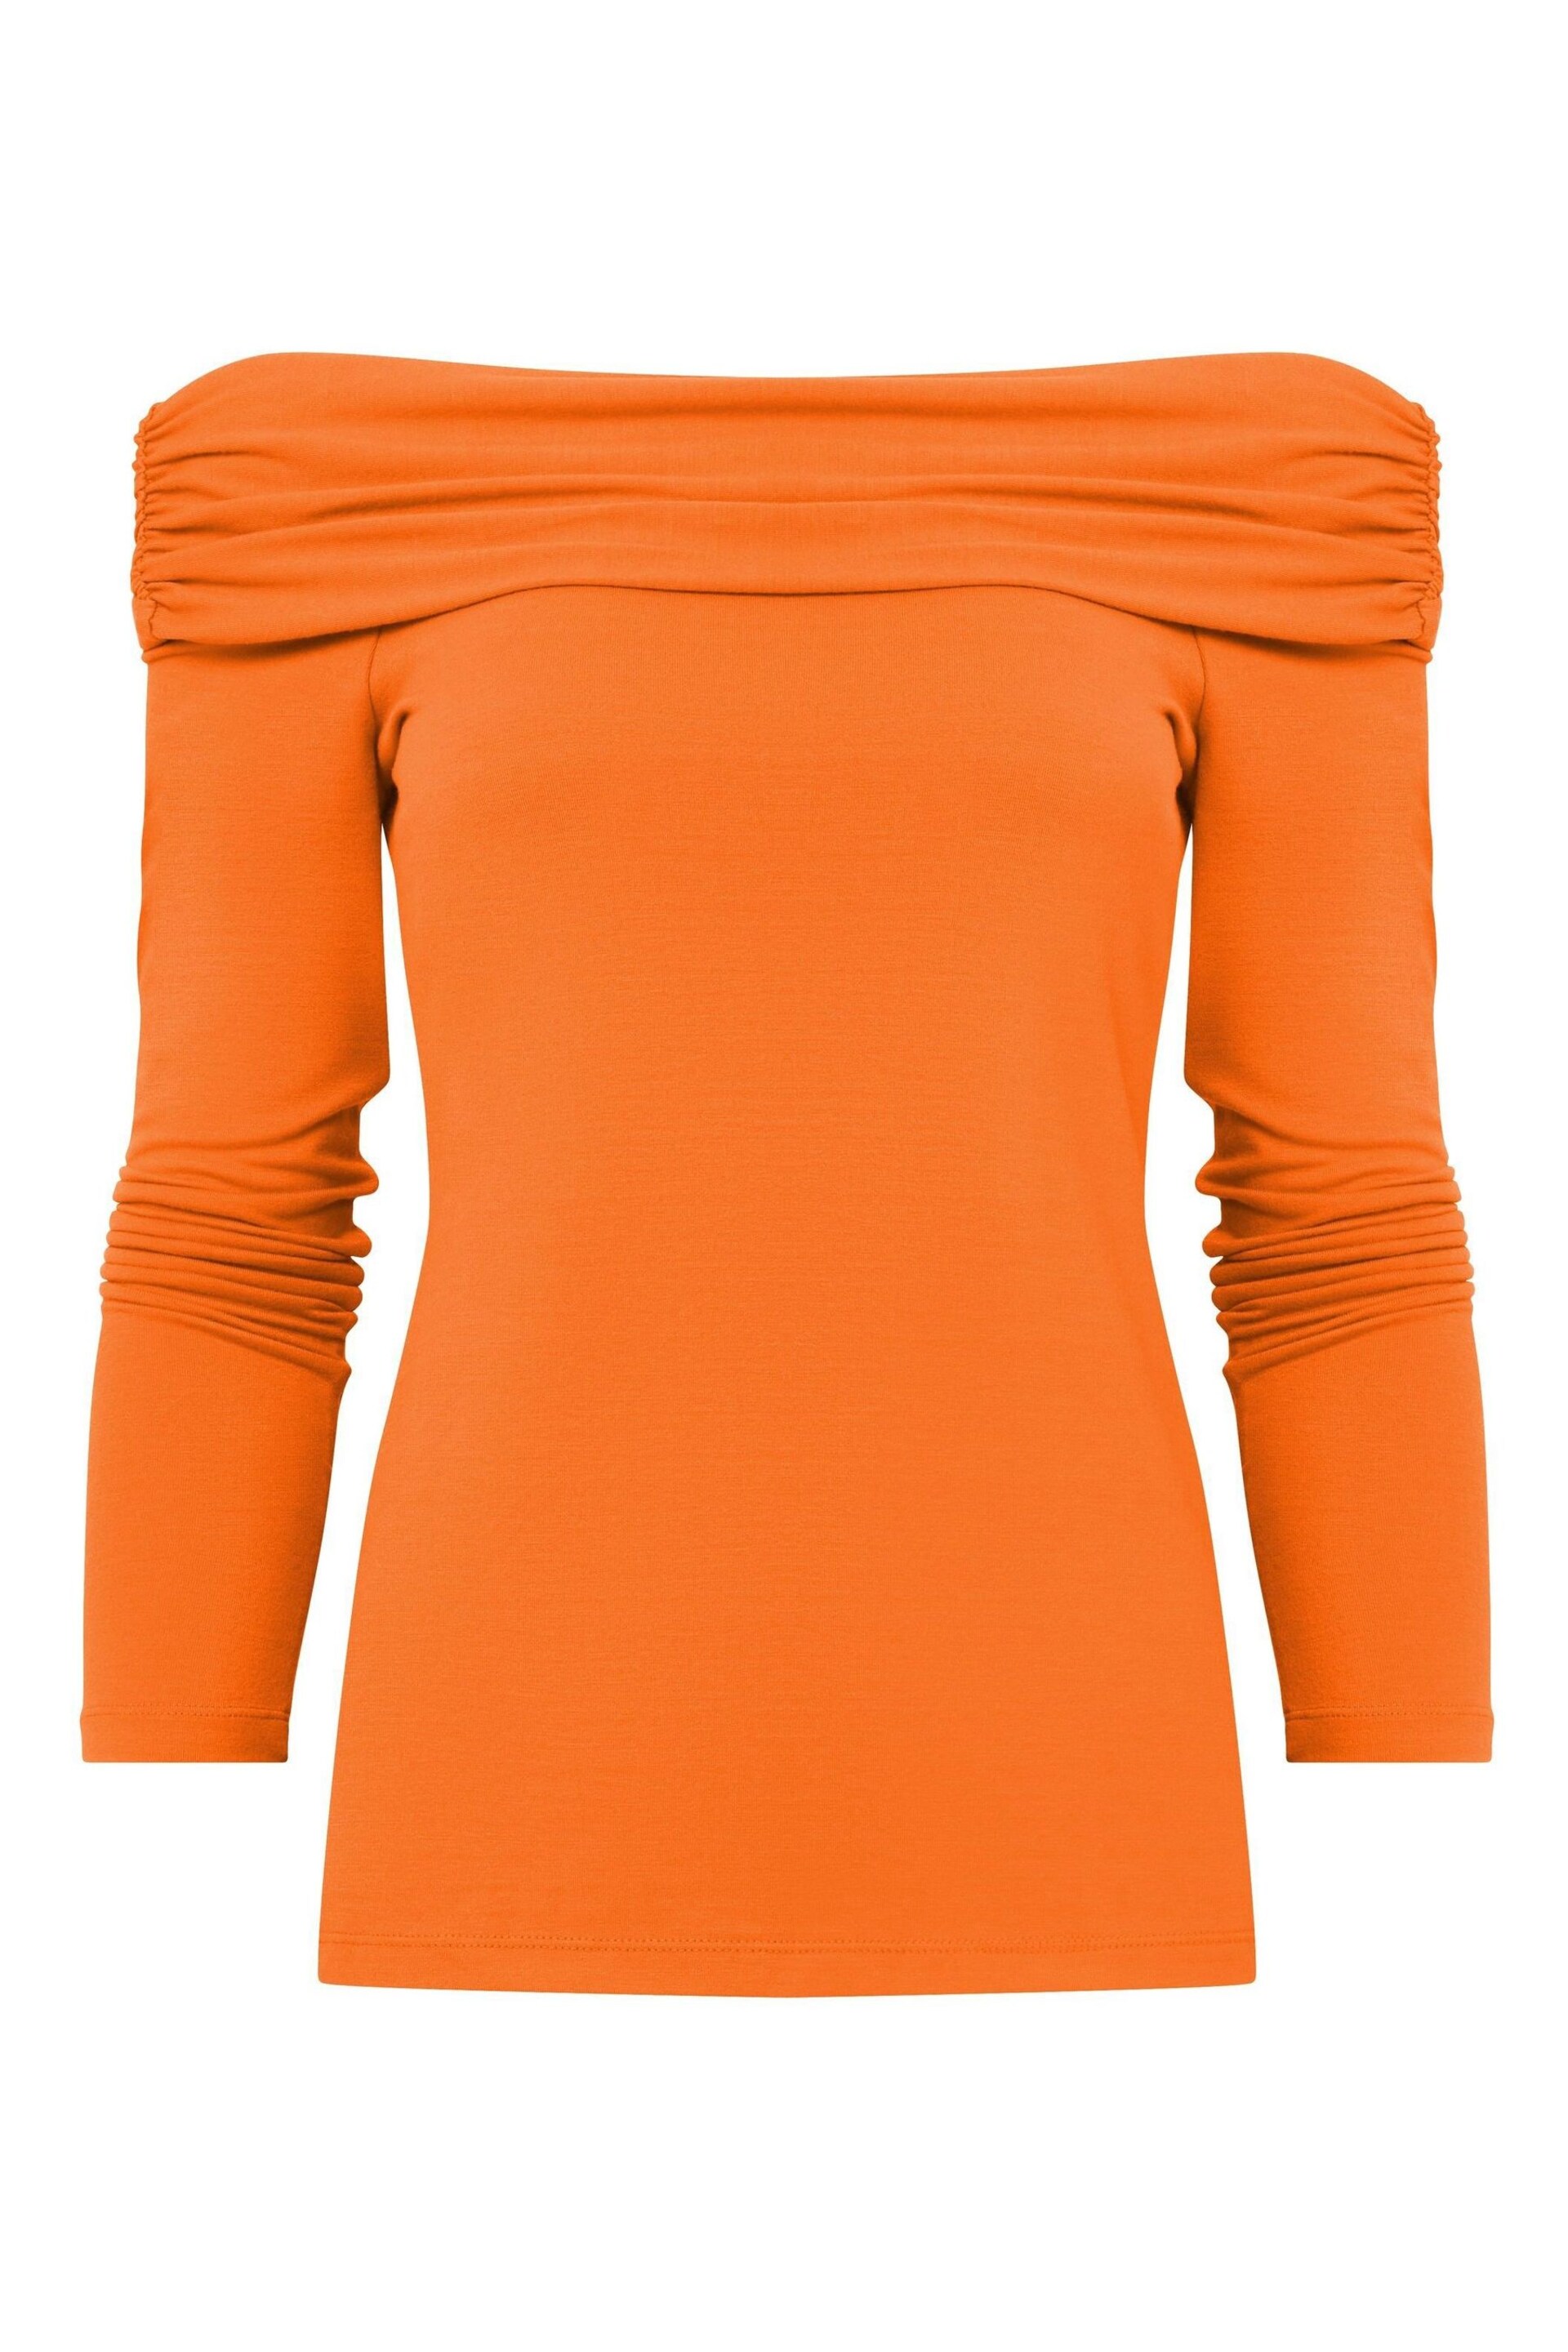 Joe Browns Orange Bardot Jersey Top - Image 5 of 5